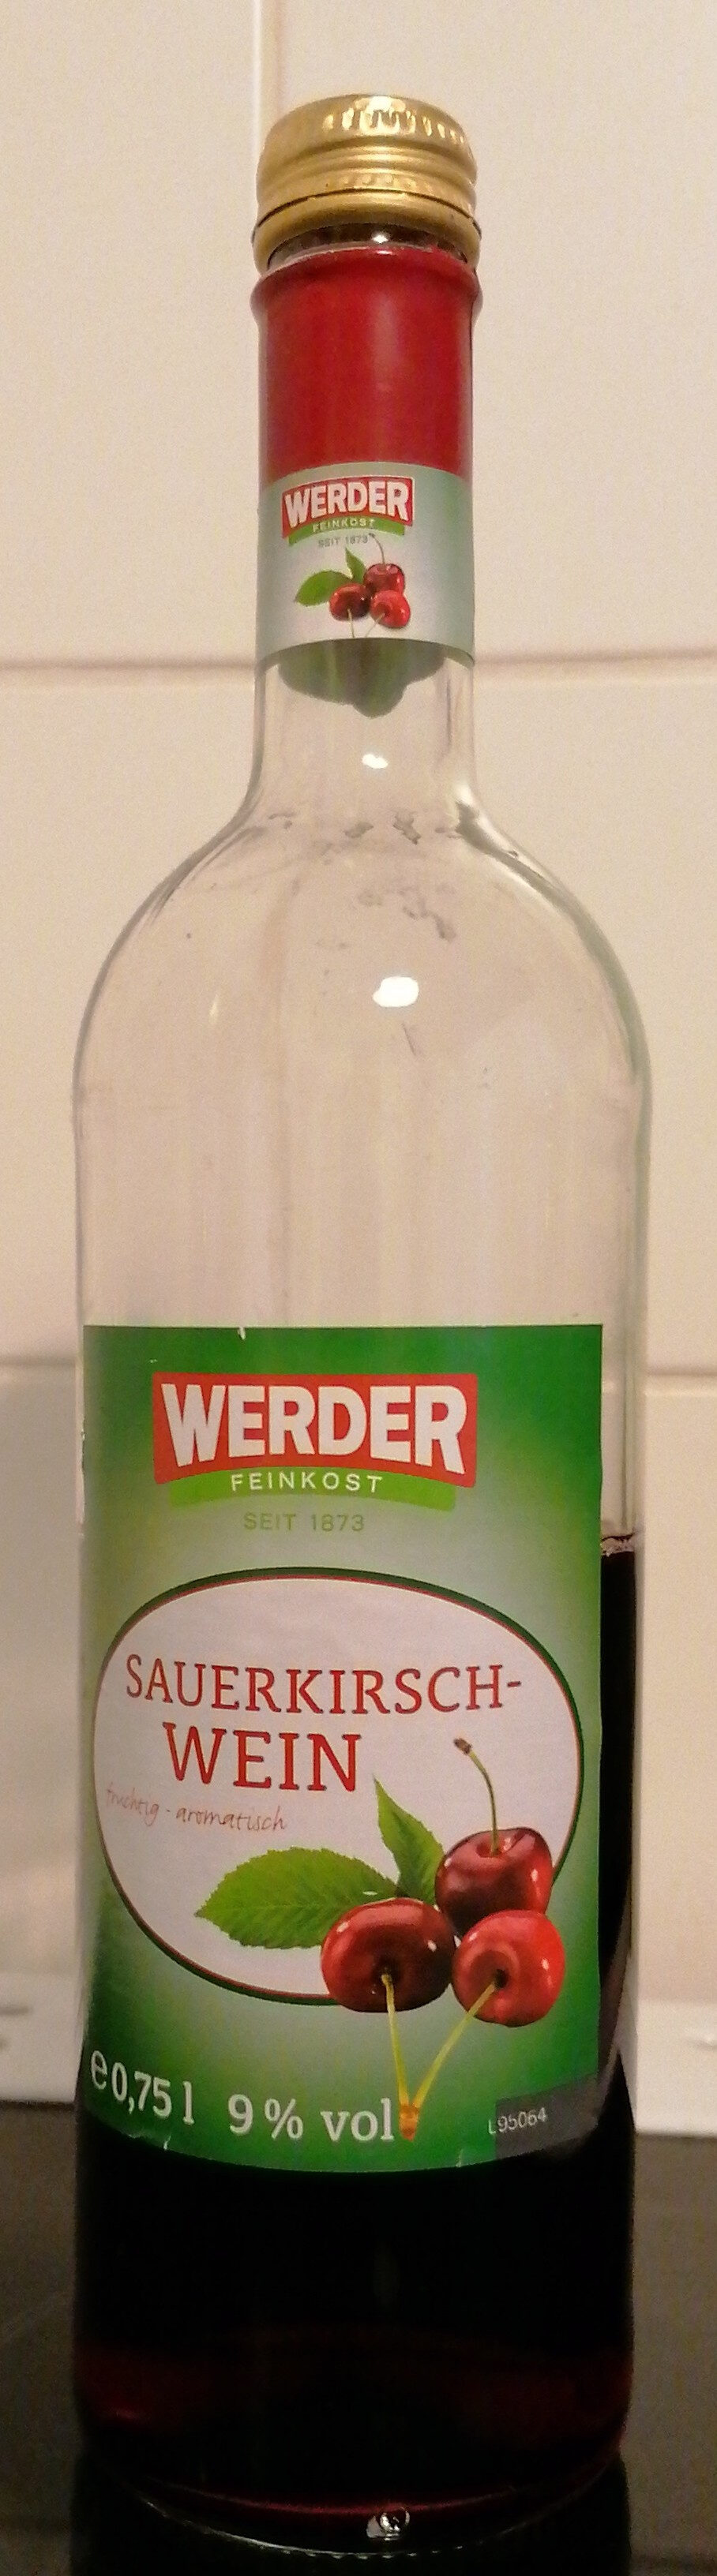 Werder Sauerkirschwein - Product - de